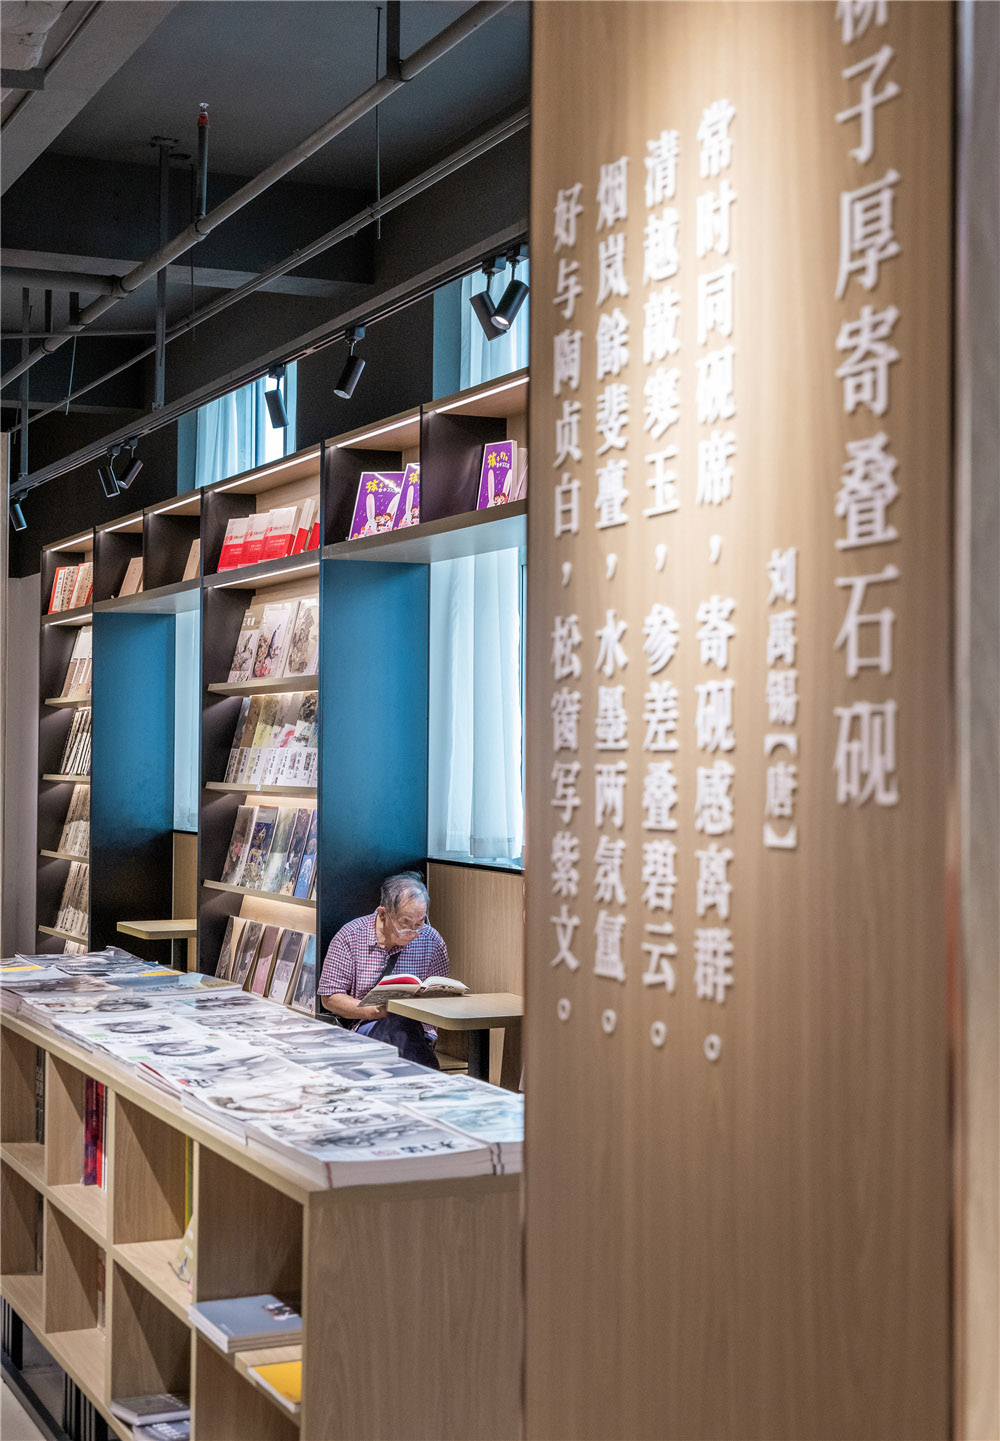 書店設計,商店設計,書店零售店設計,書店設計案例,書店設計方案,柳州,新華書店,GLC上海聯思建築設計